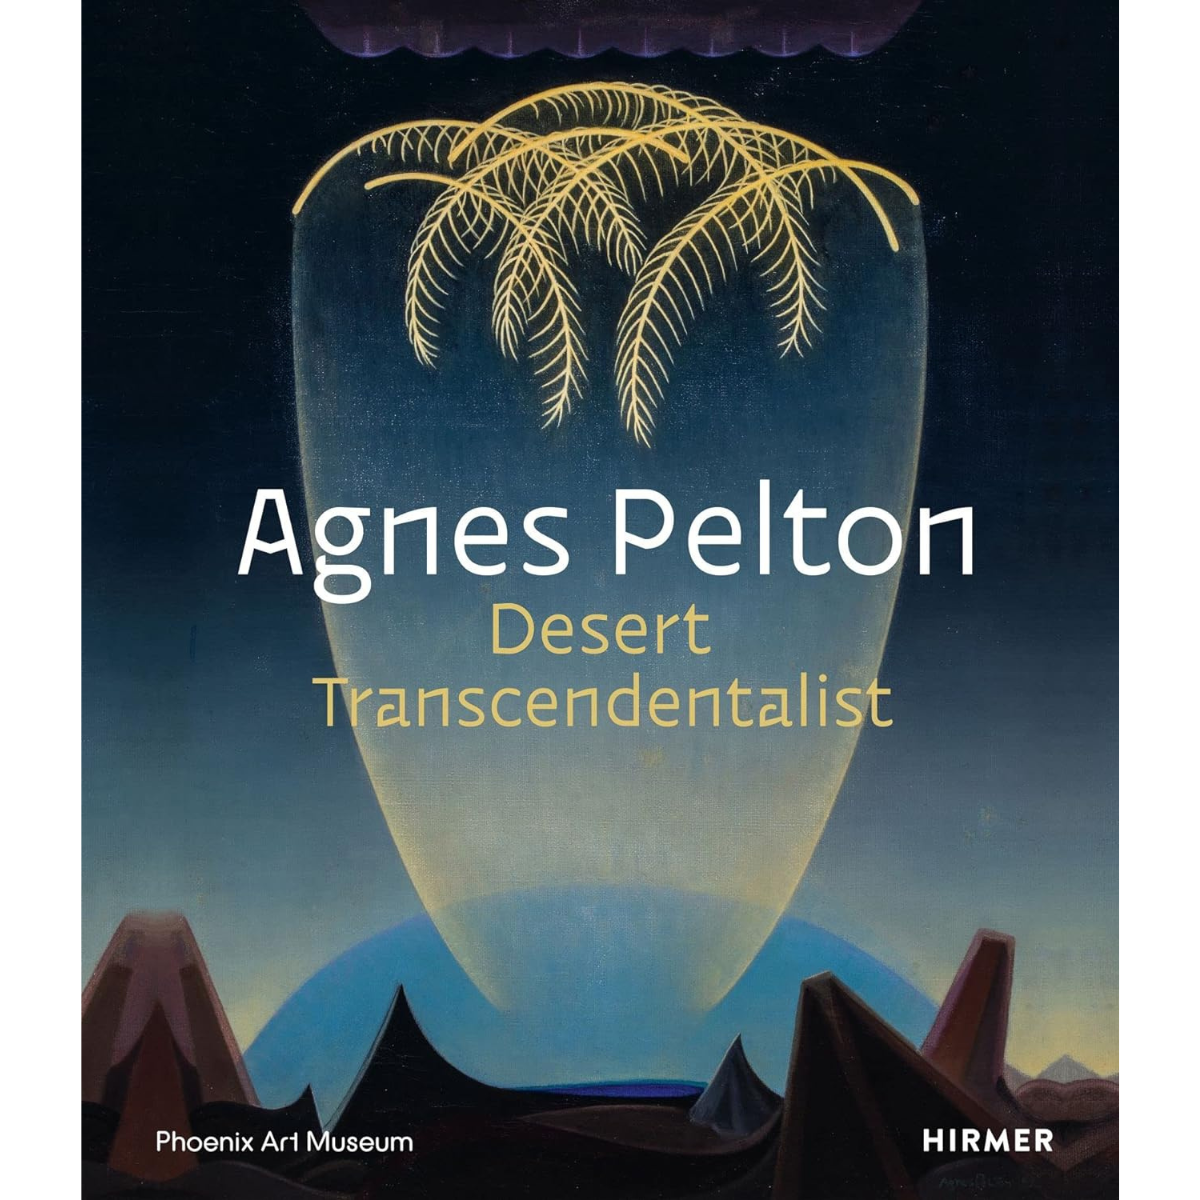 Agnes Pelton: Desert Transcendentalist